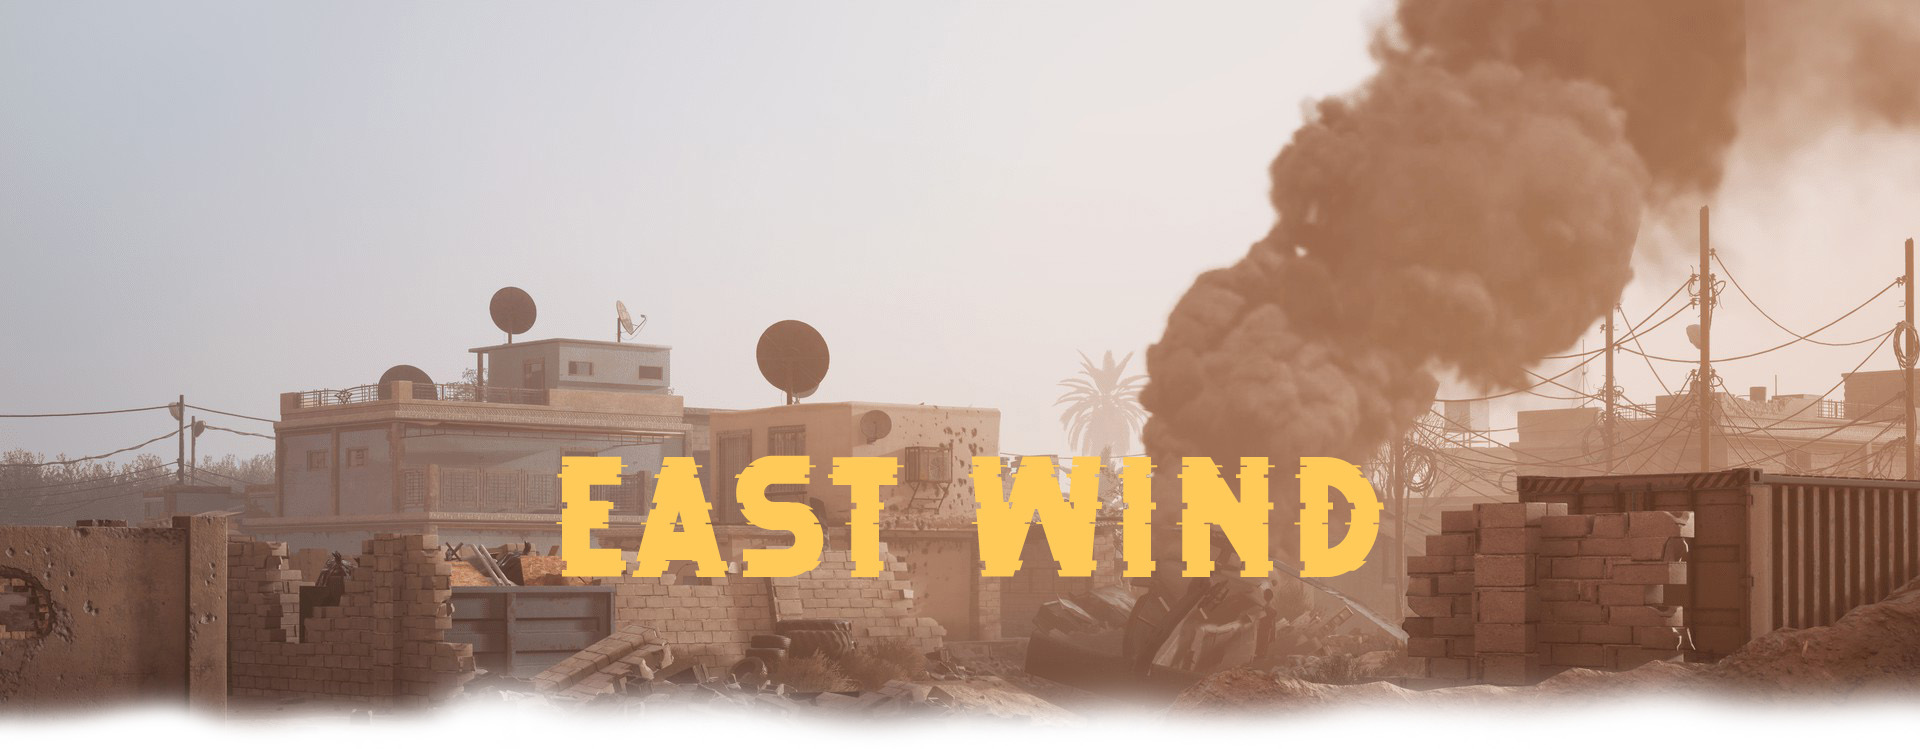 East Wind2